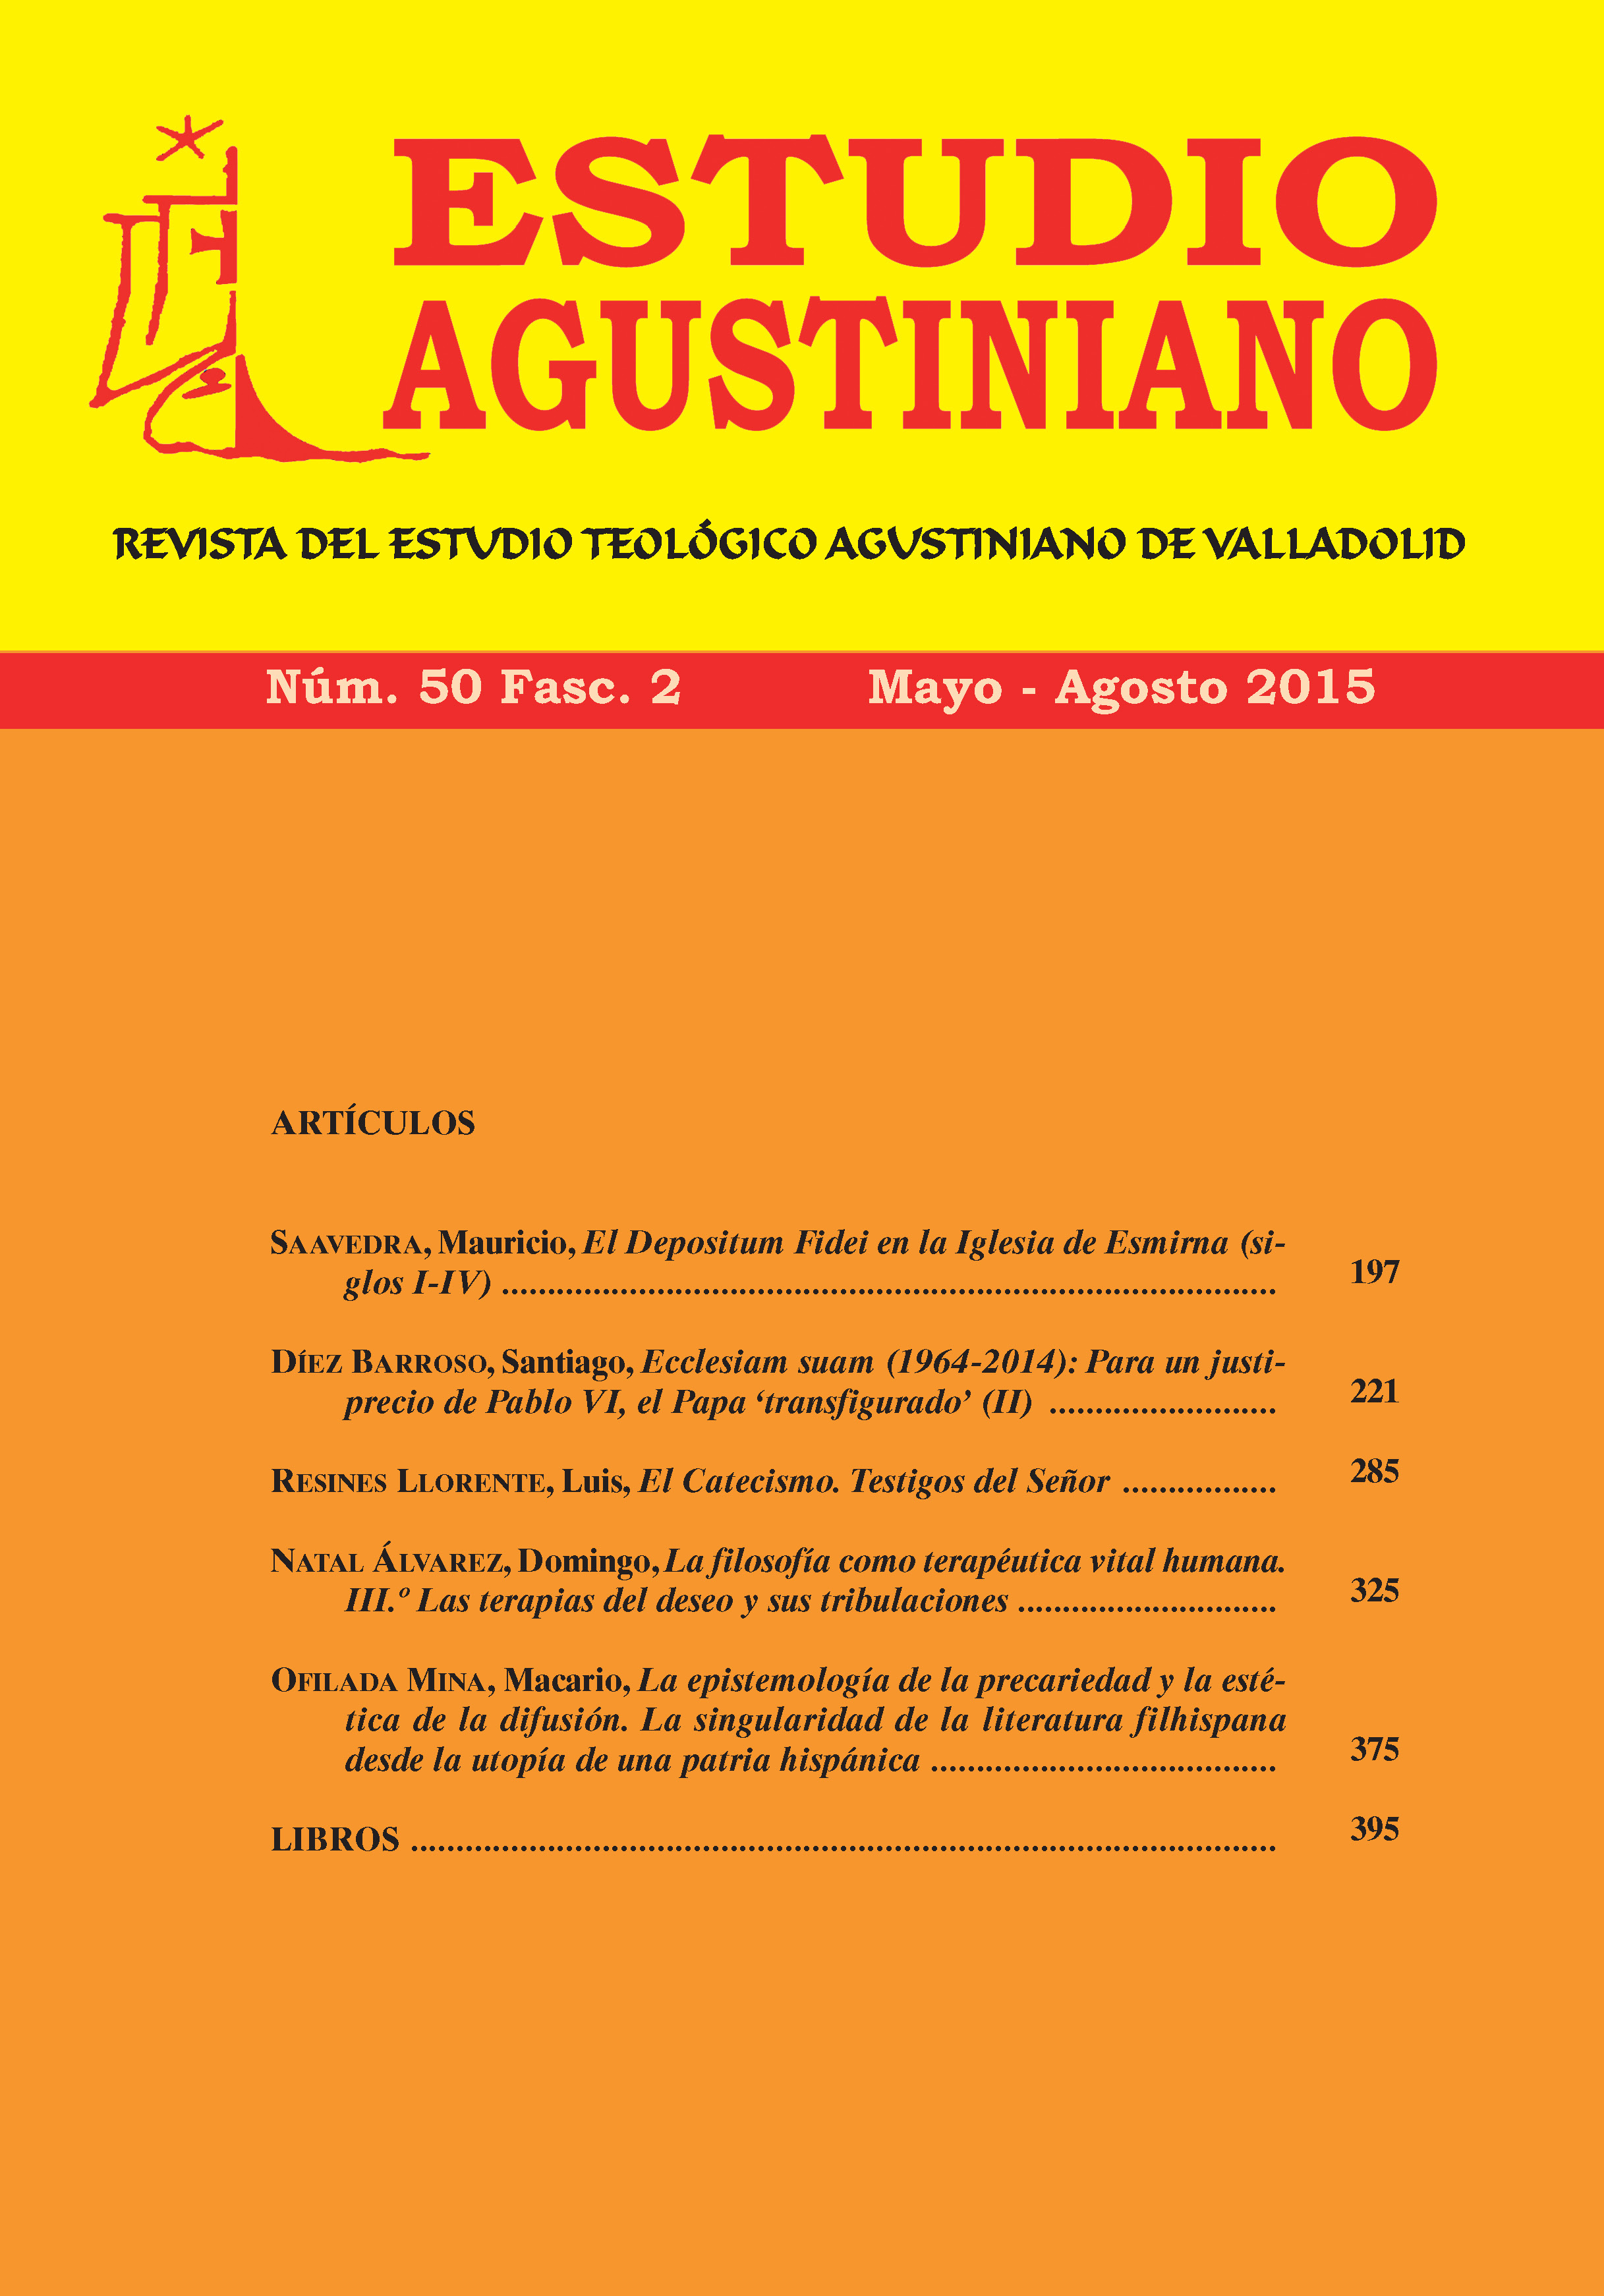 					Ver Vol. 50 Núm. 2 (2015): Estudio Agustiniano
				